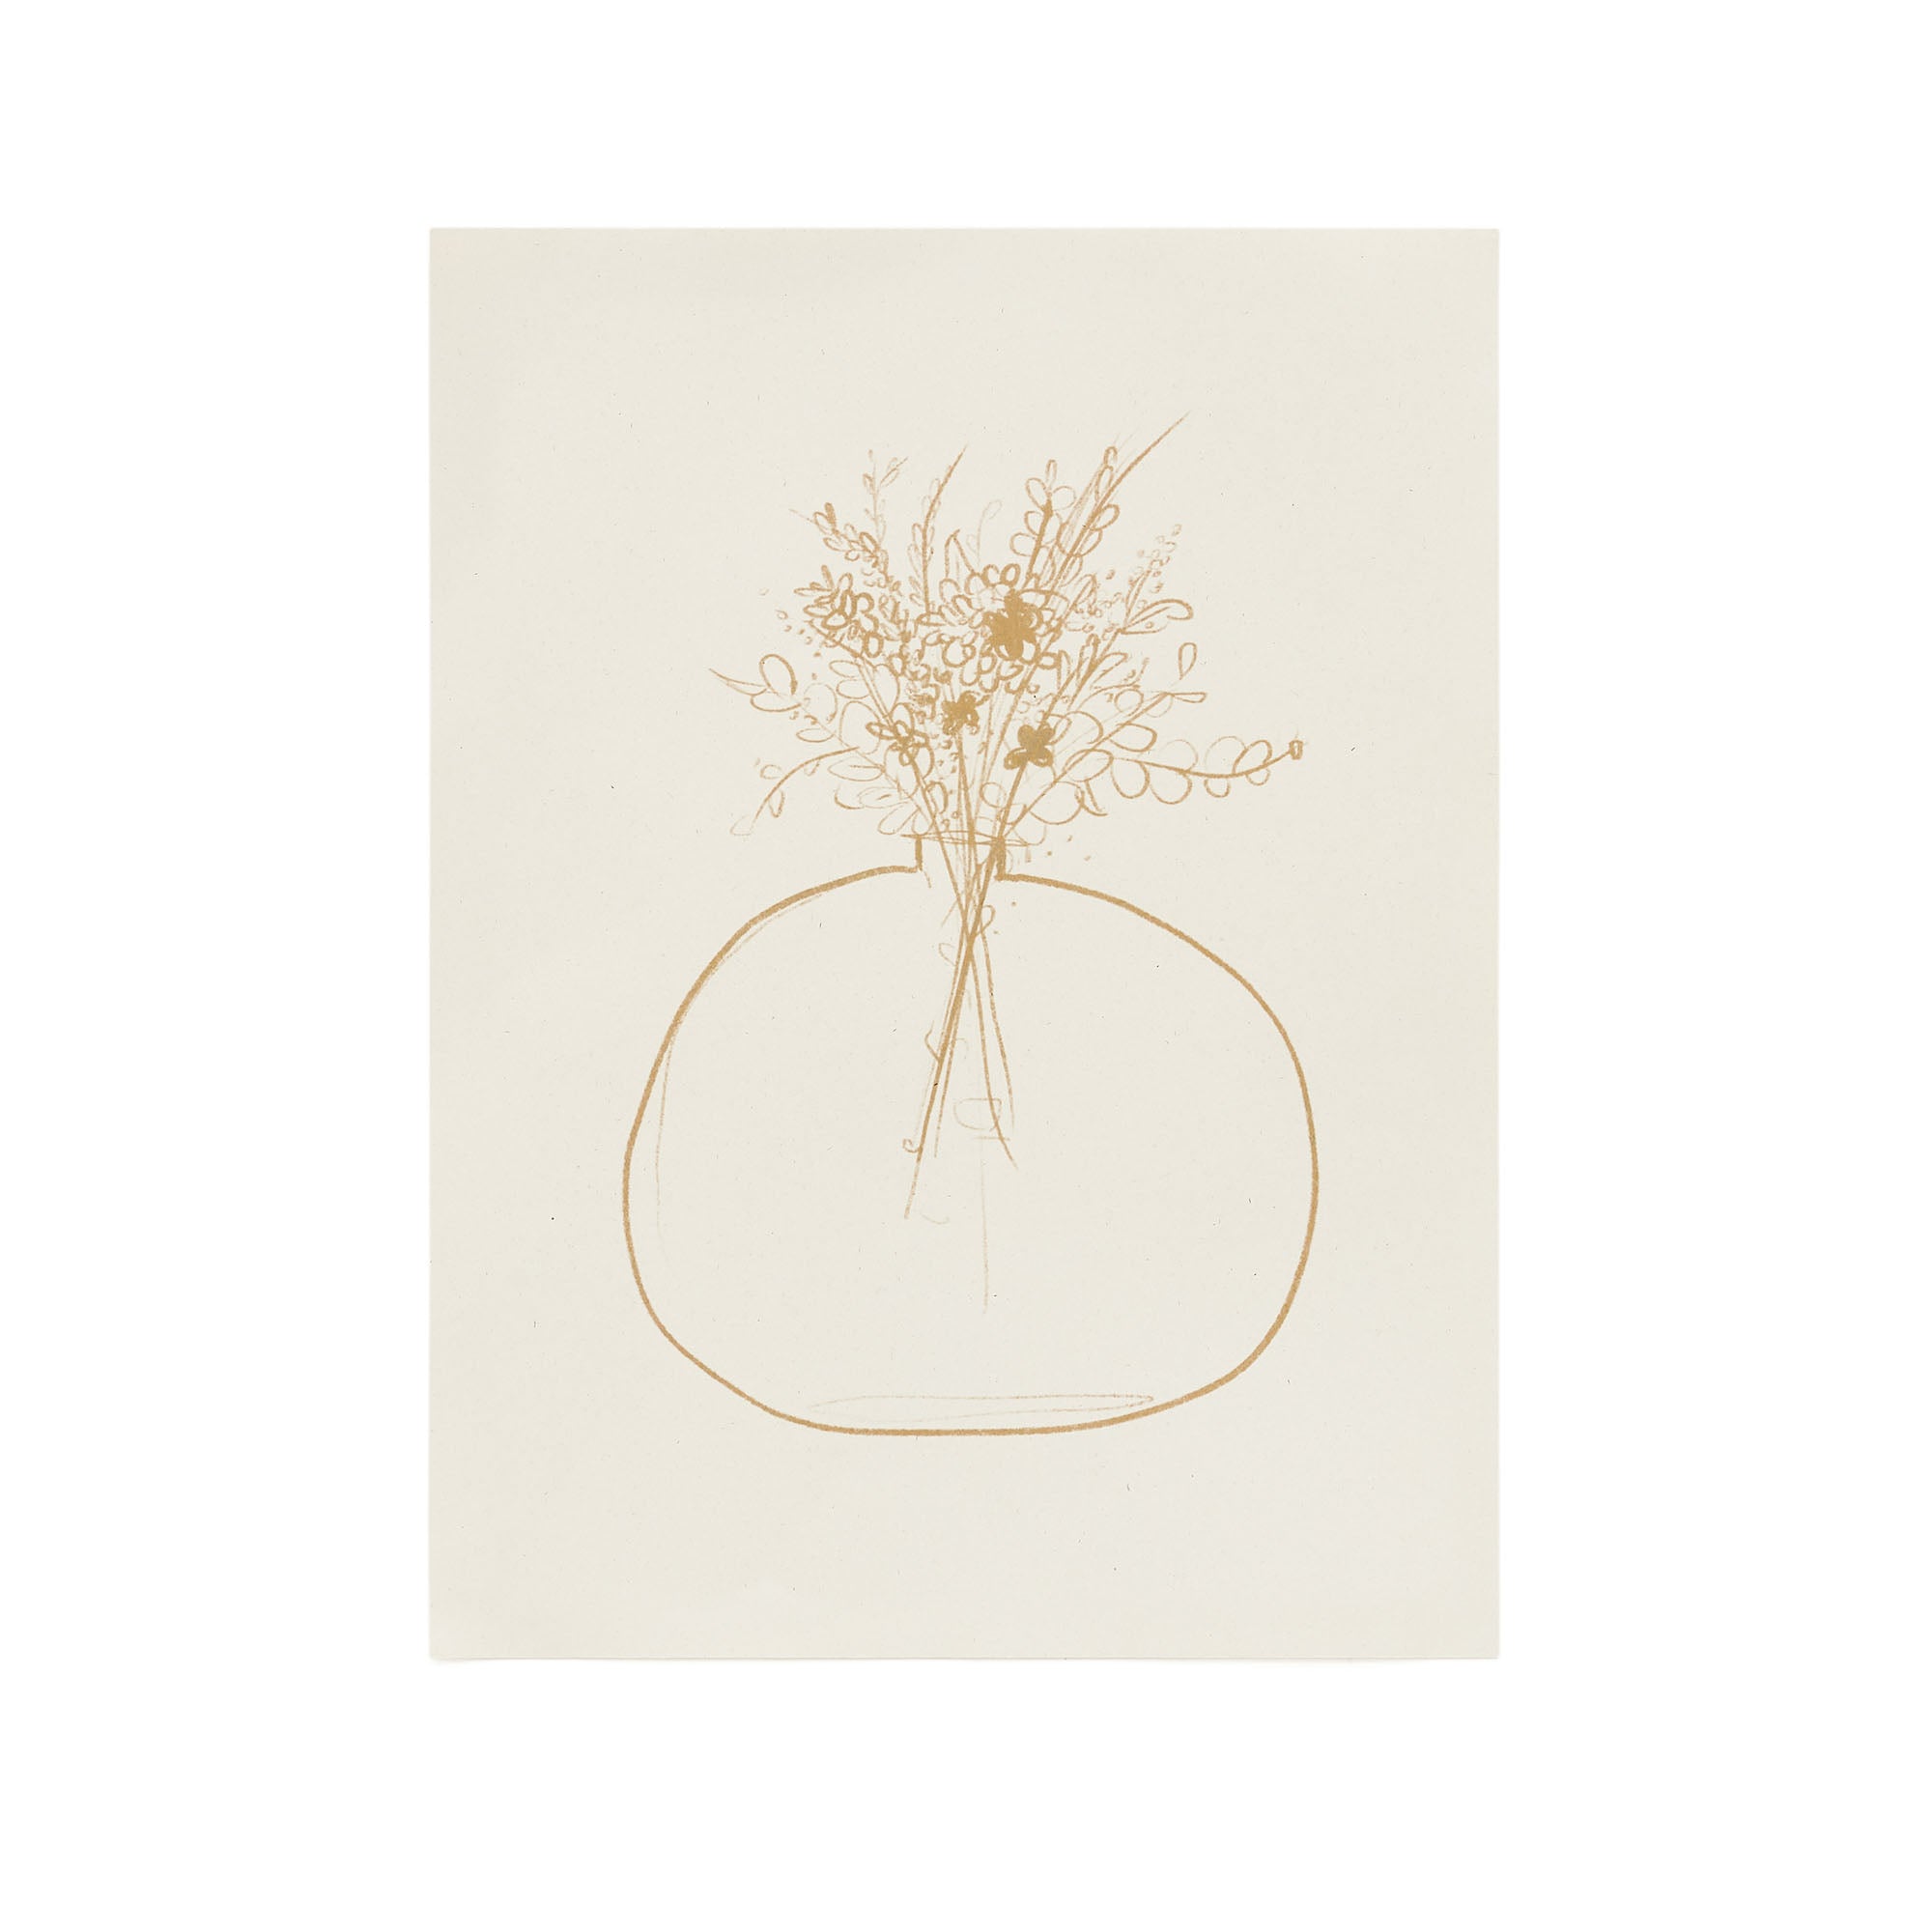 Erley beige paper print with mustard flower vase, 29.8 x 39.8 cm